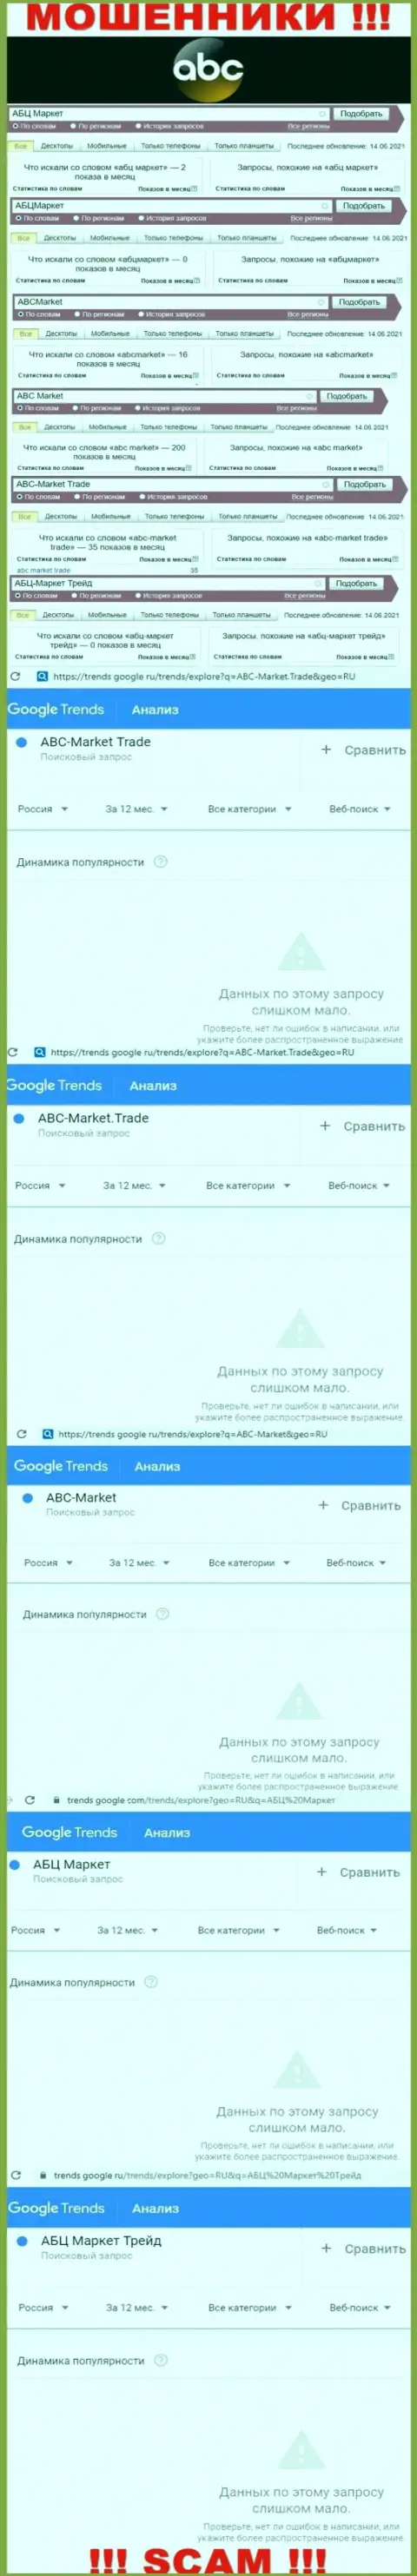 Статистика количества запросов в глобальной сети по мошенникам ABCMarket